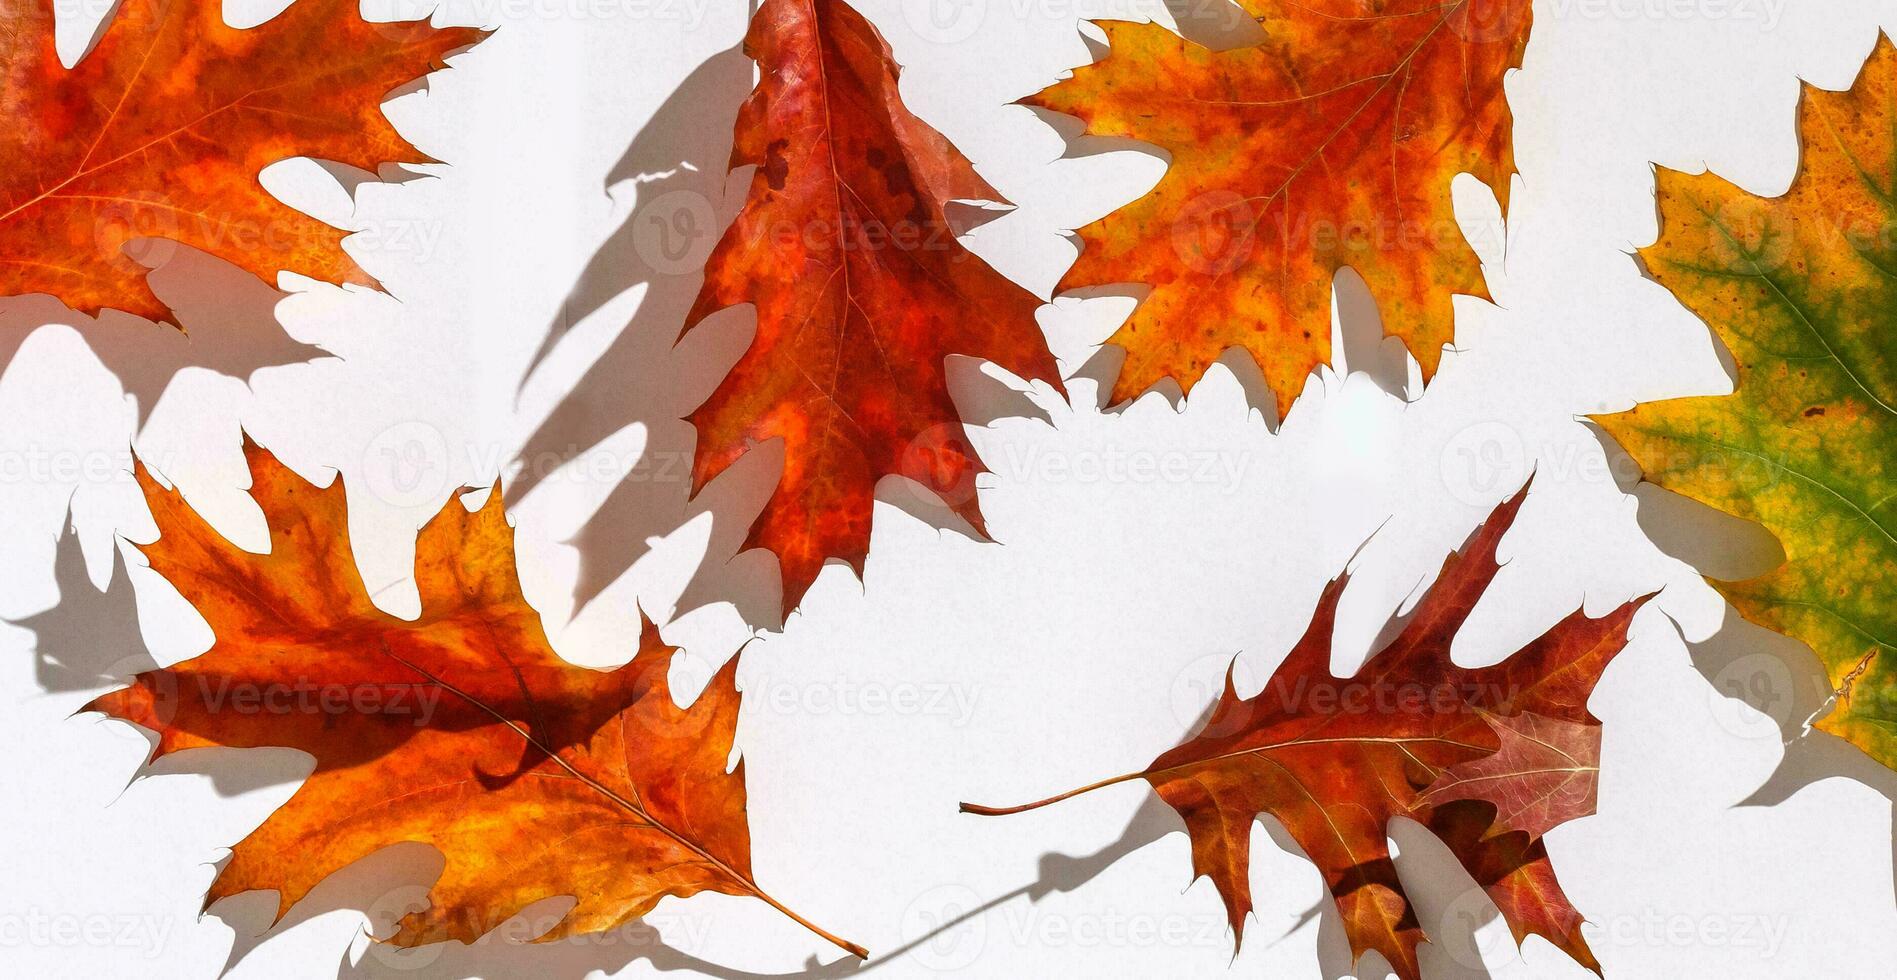 mehrfarbig Blätter. bunt Herbst Blätter Sammlung isoliert auf Weiß Hintergrund foto